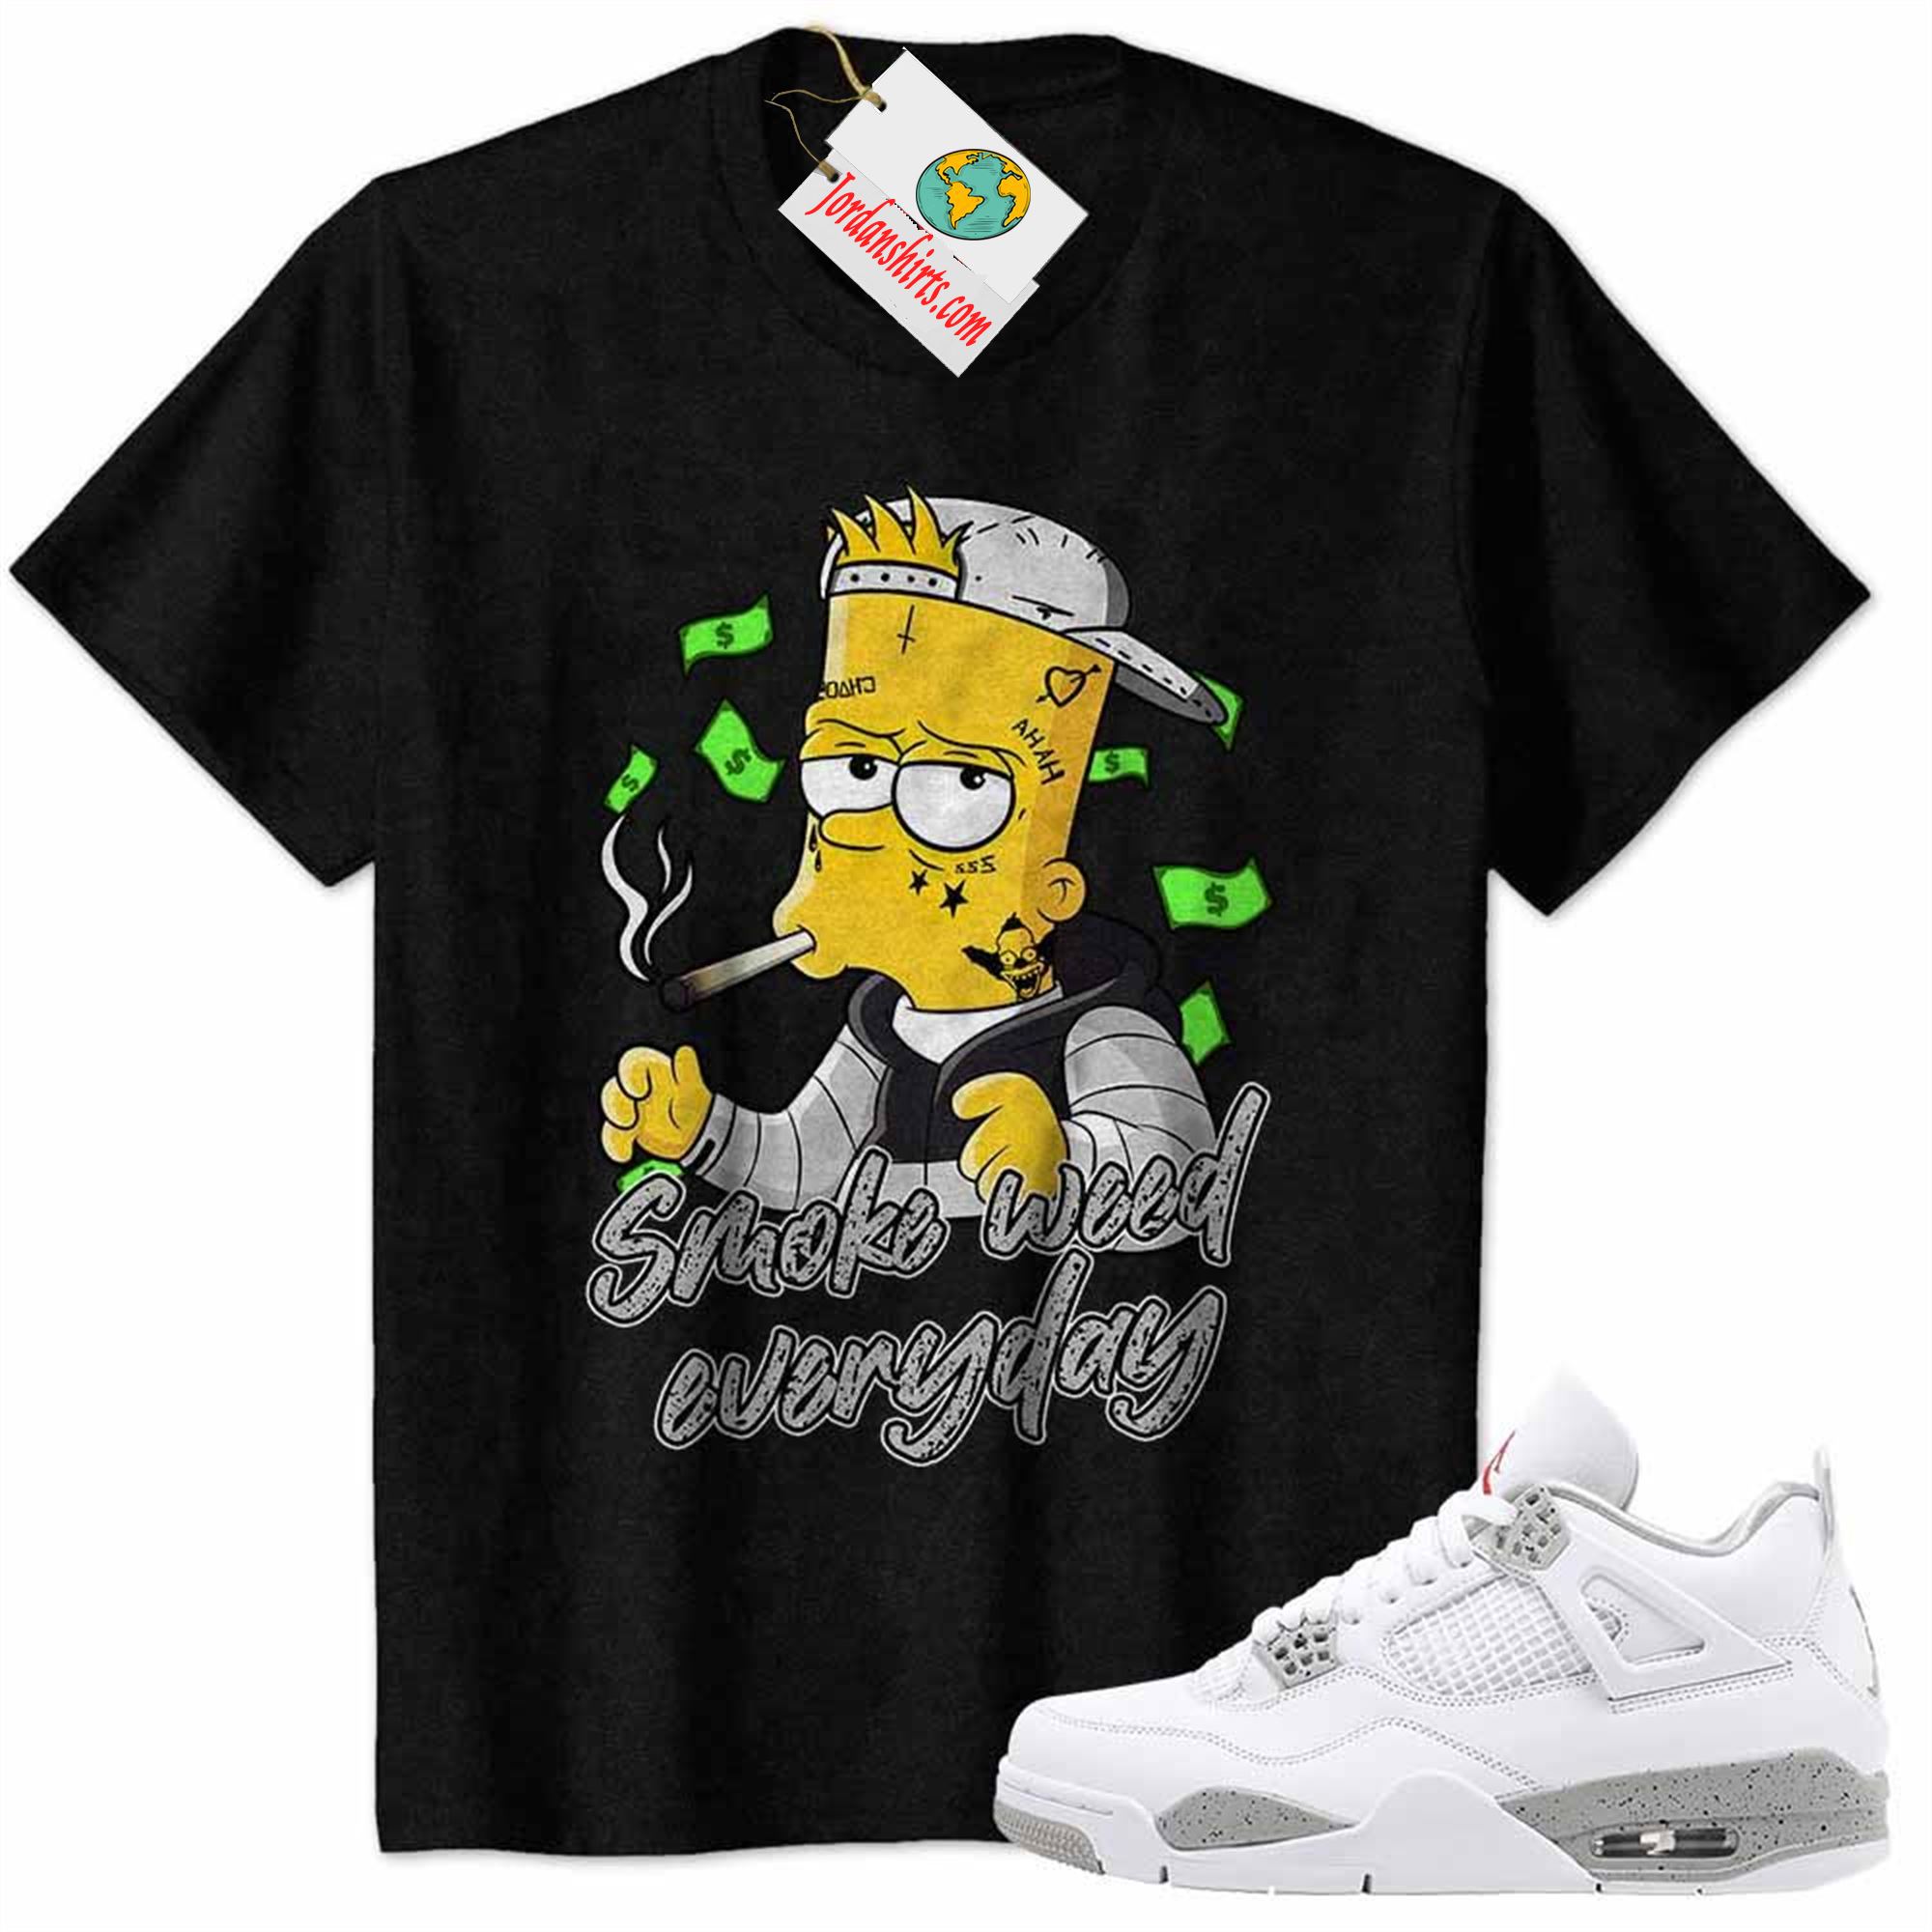 Jordan 4 Shirt, Bart Simpson Smoke Weed Everyday Black Air Jordan 4 White Oreo 4s Plus Size Up To 5xl